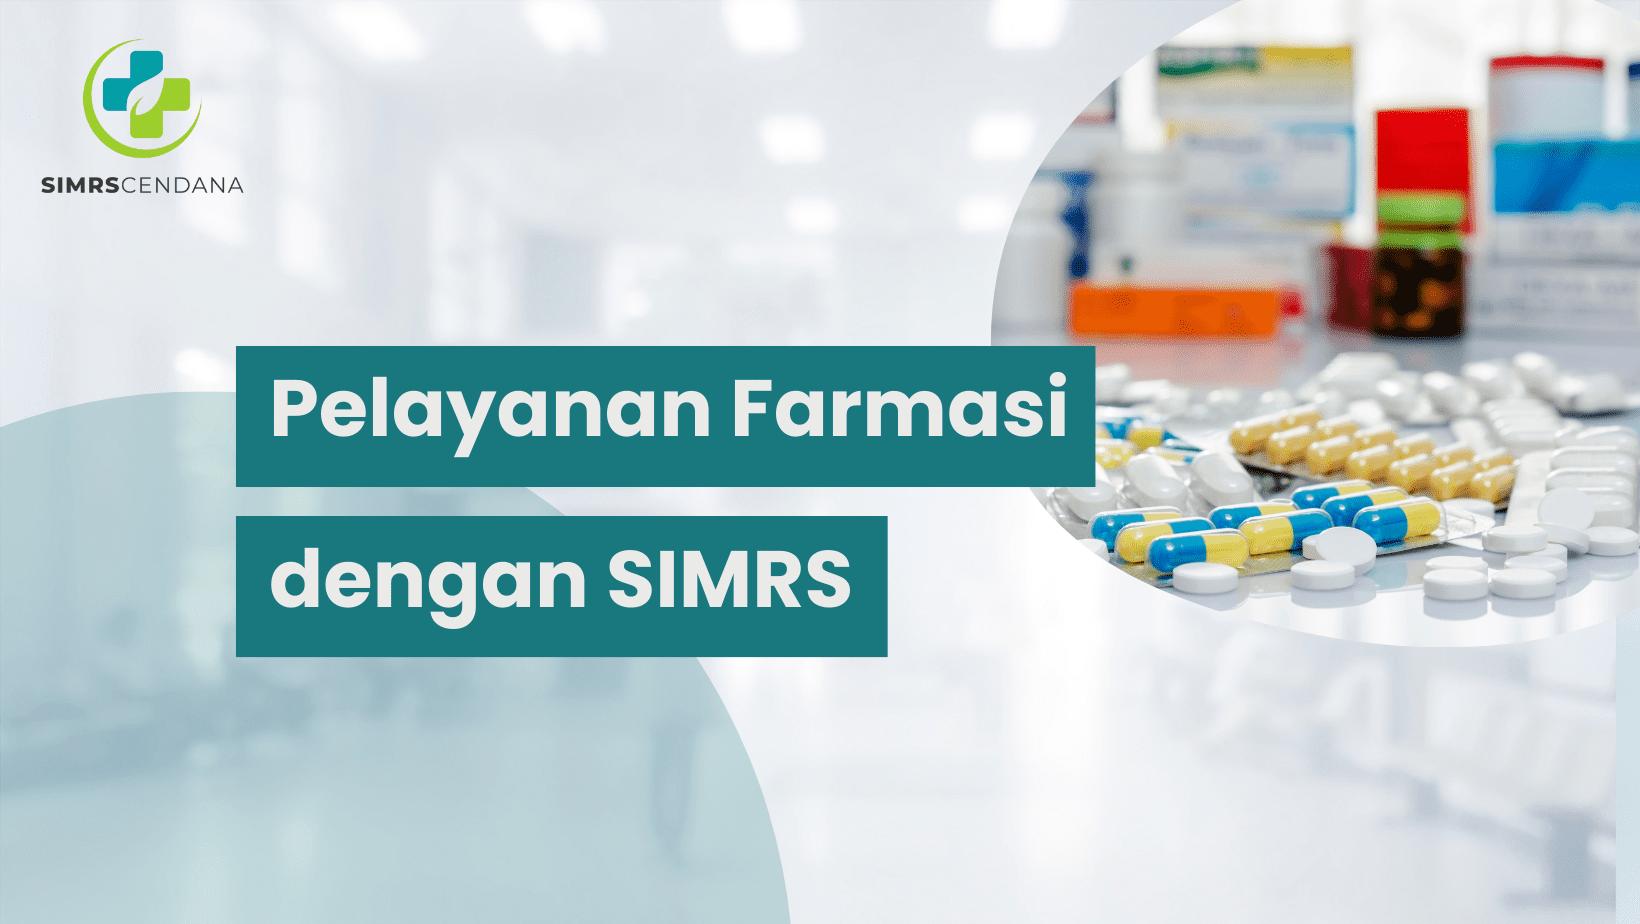 Pelayanan Farmasi dengan SIMRS